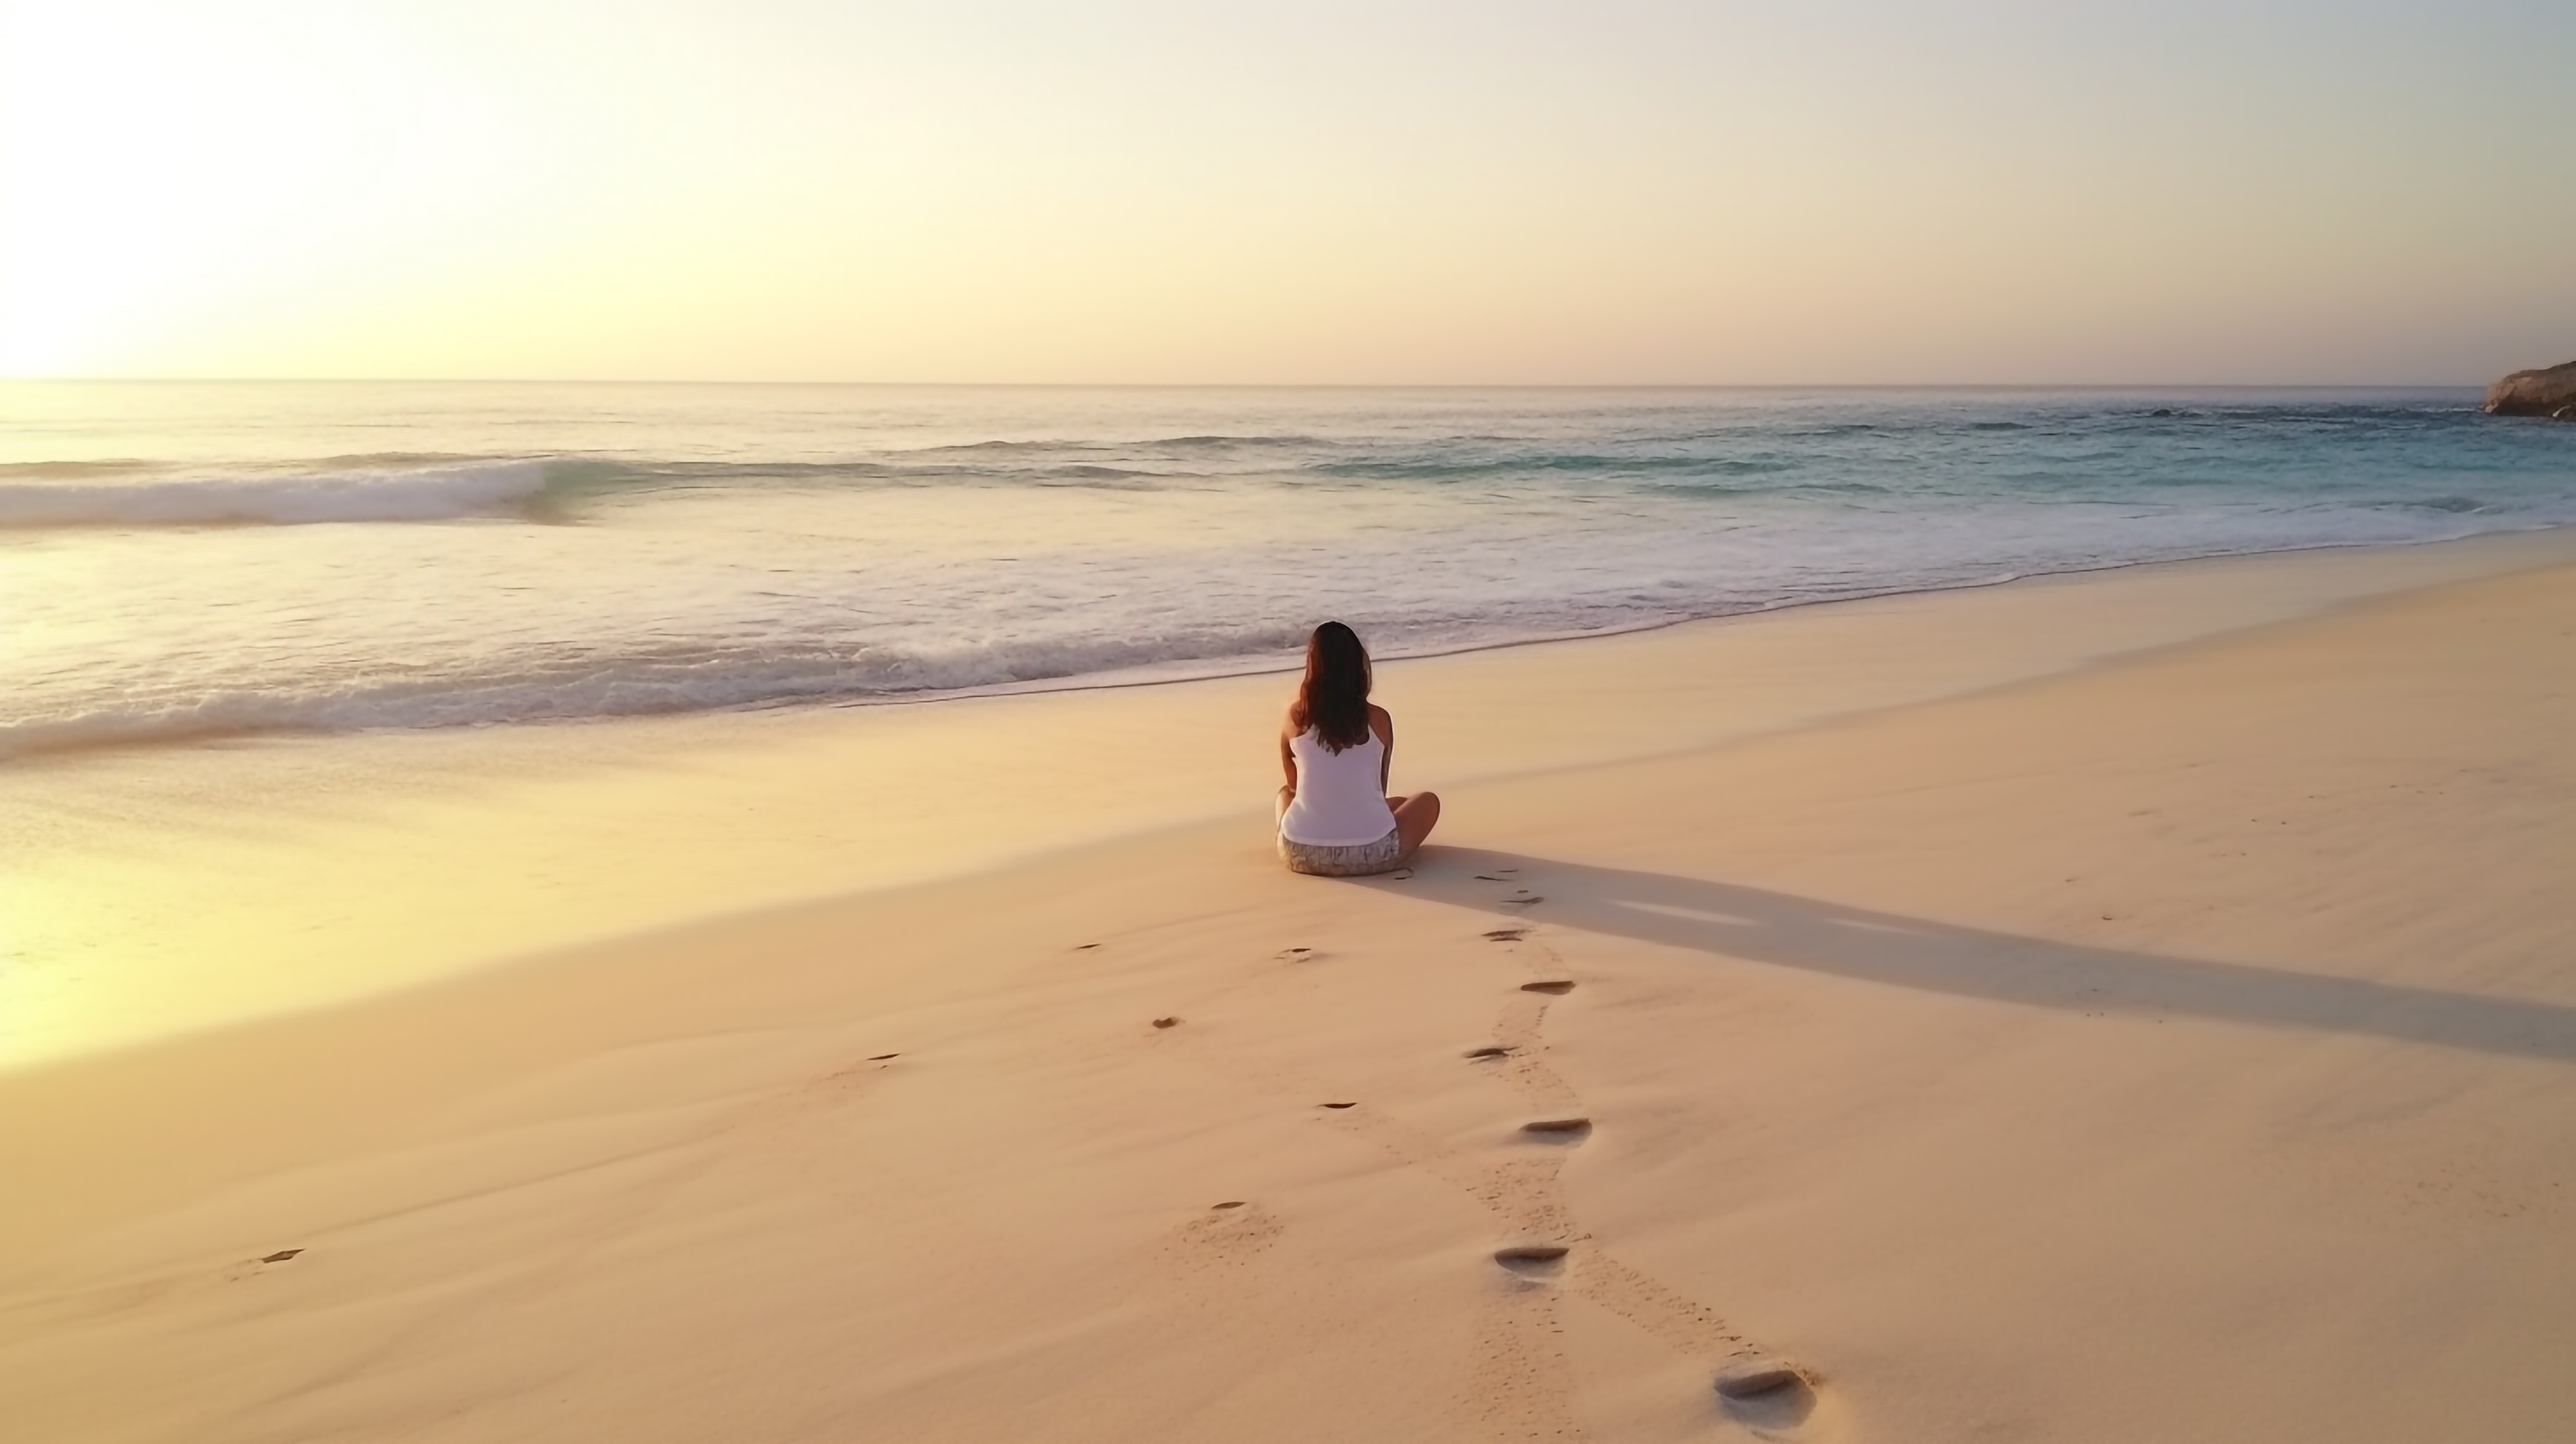 海边沙滩早晨瑜珈运动风景图片